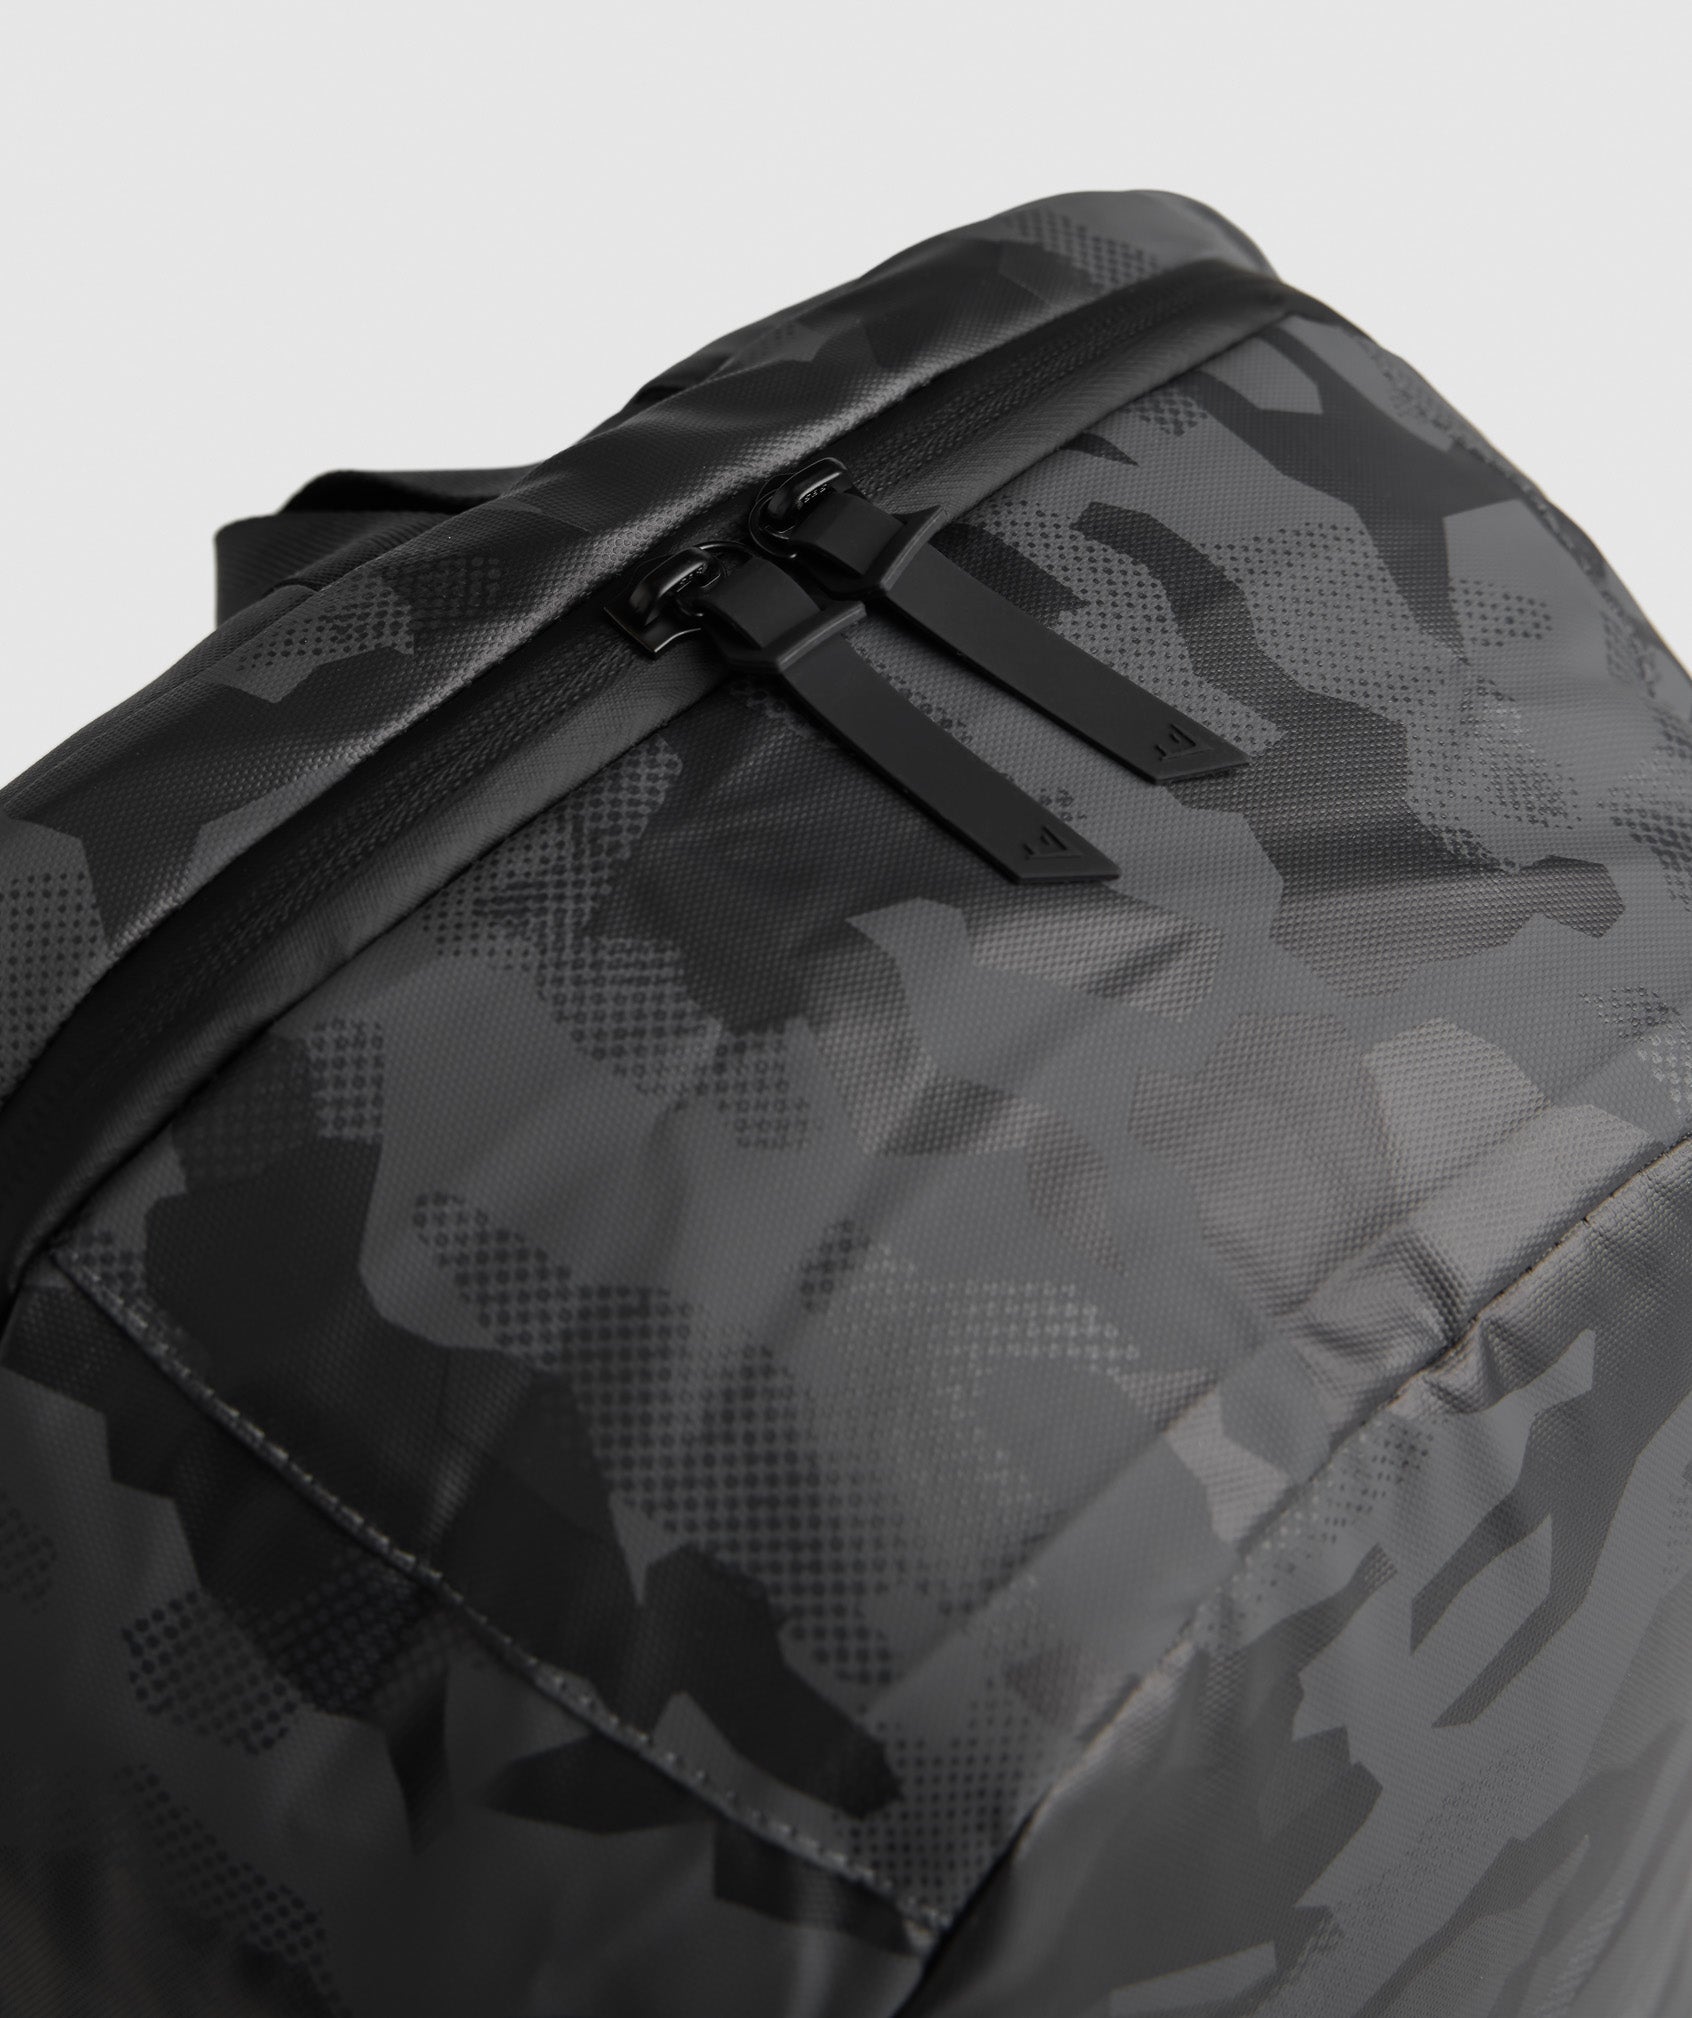  X-Series Backpack 0.1 in Black Print - view 5